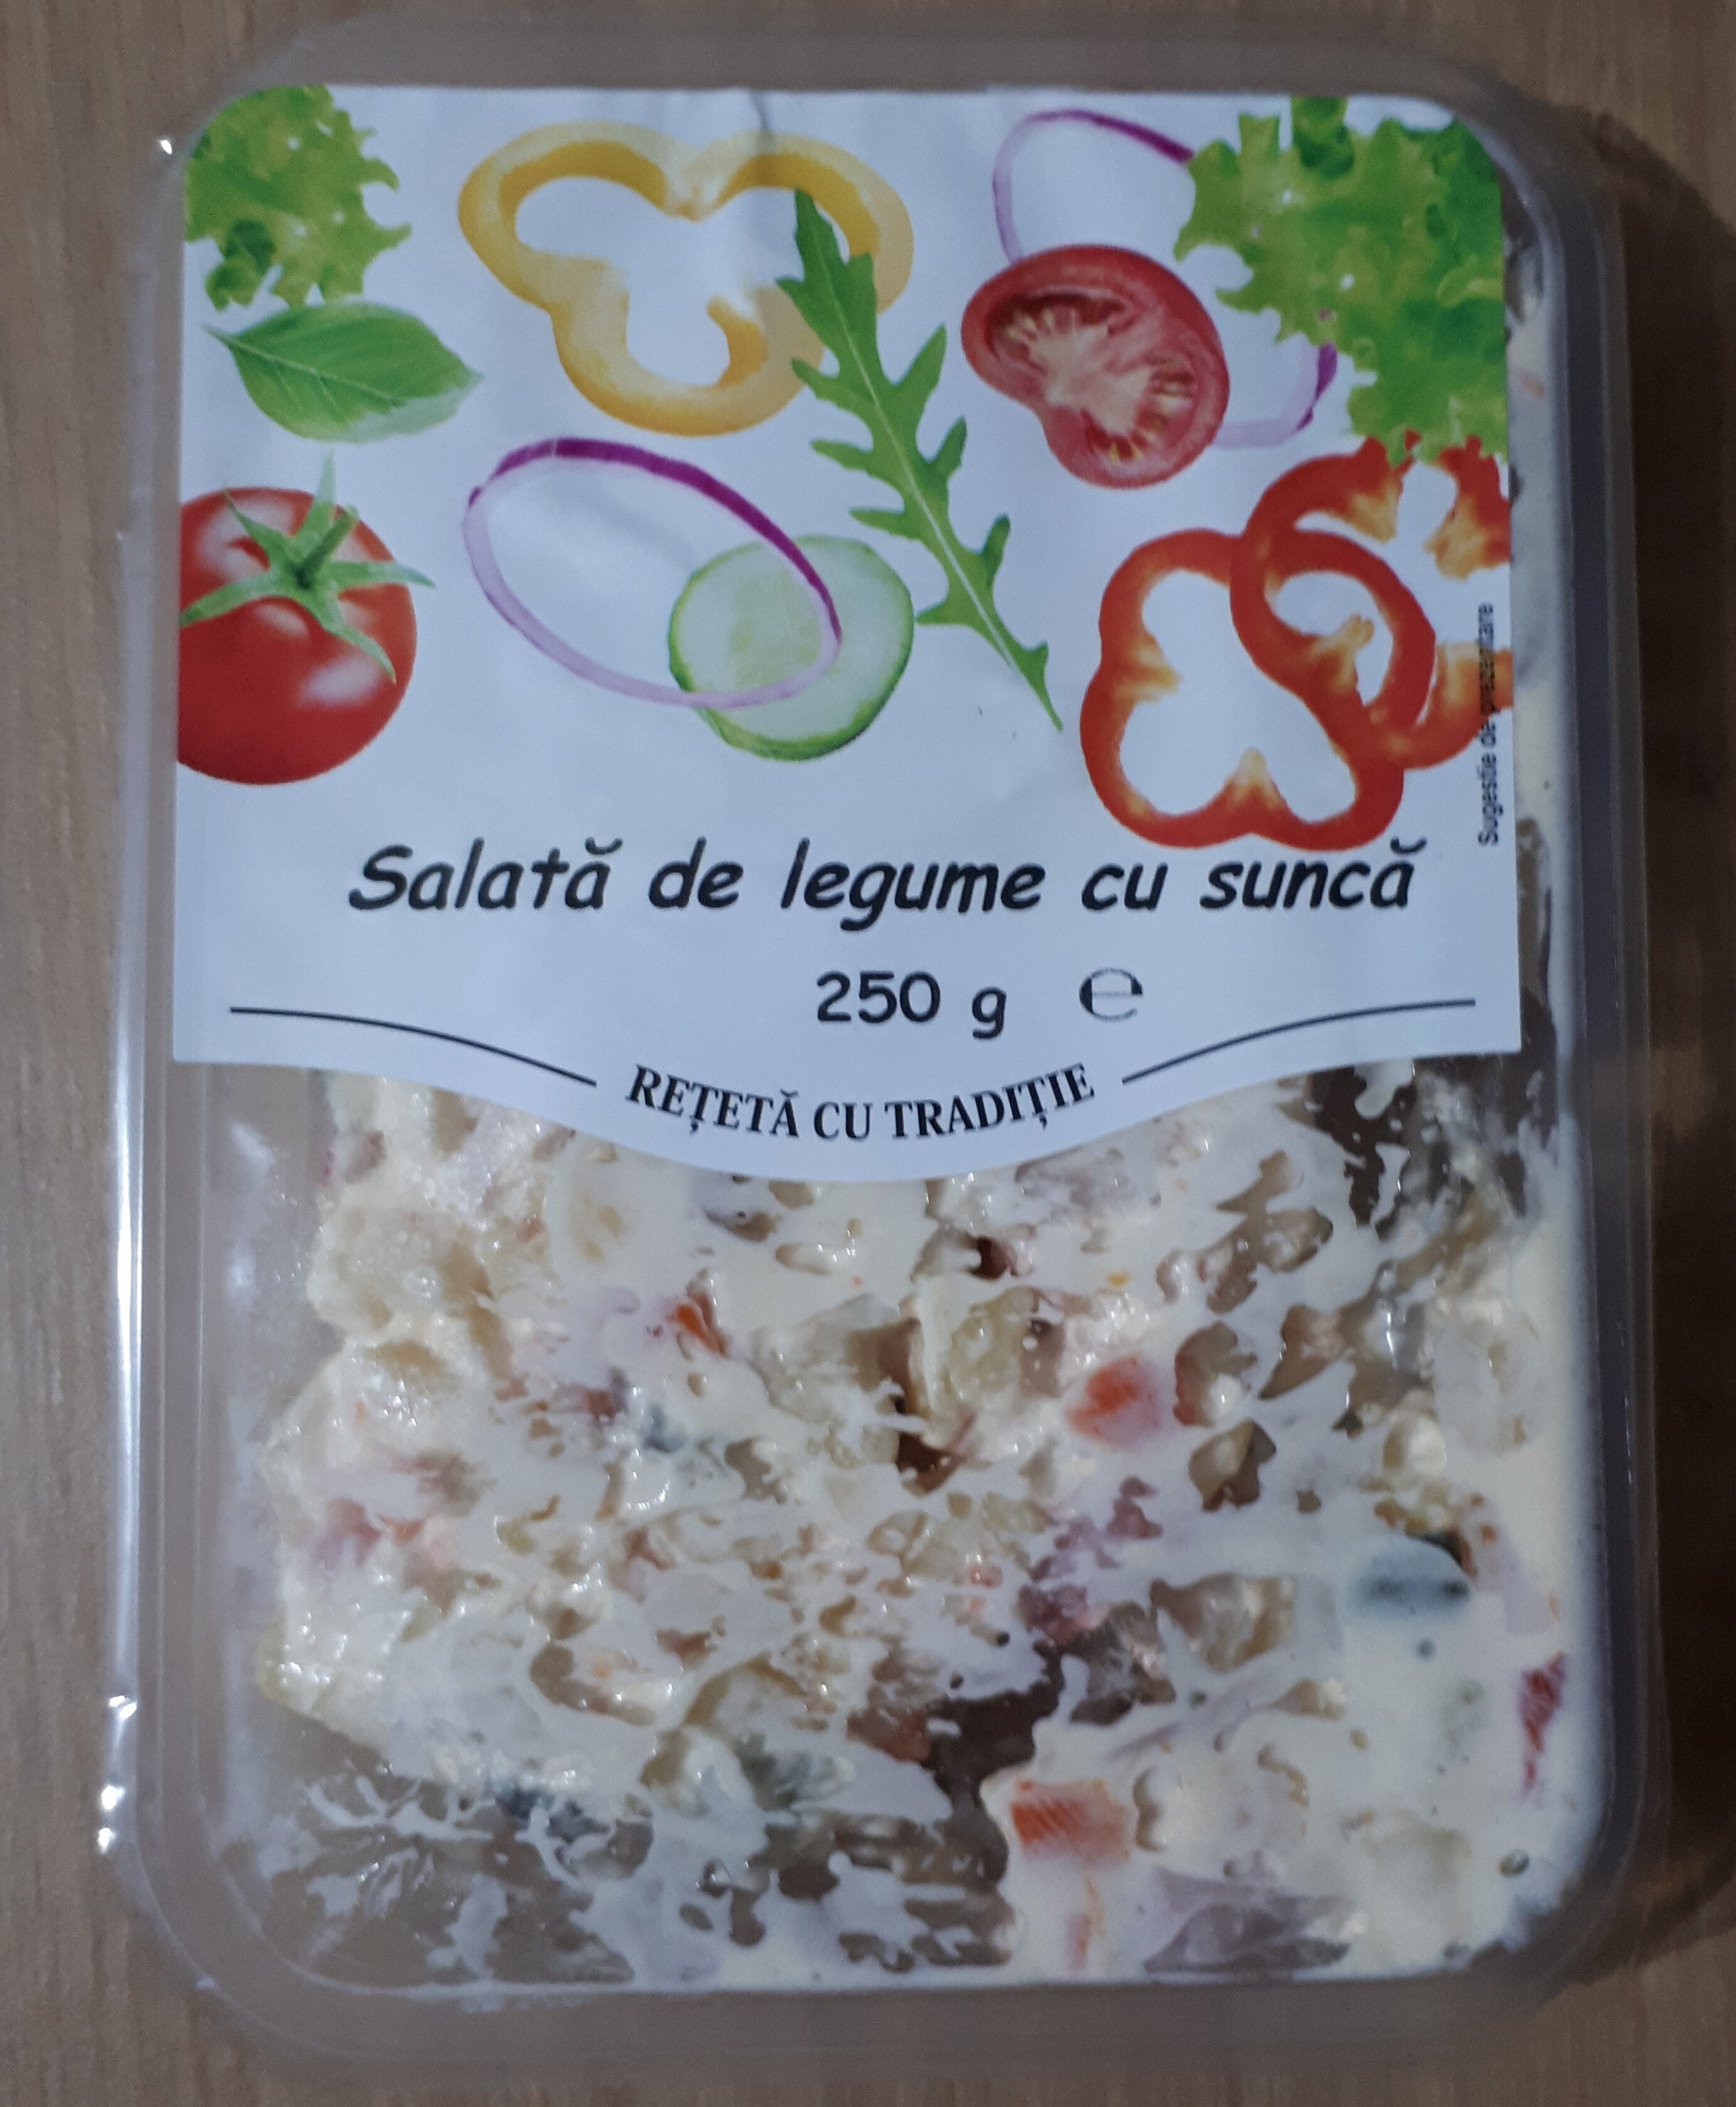 Salată de legume cu şuncă - Product - ro